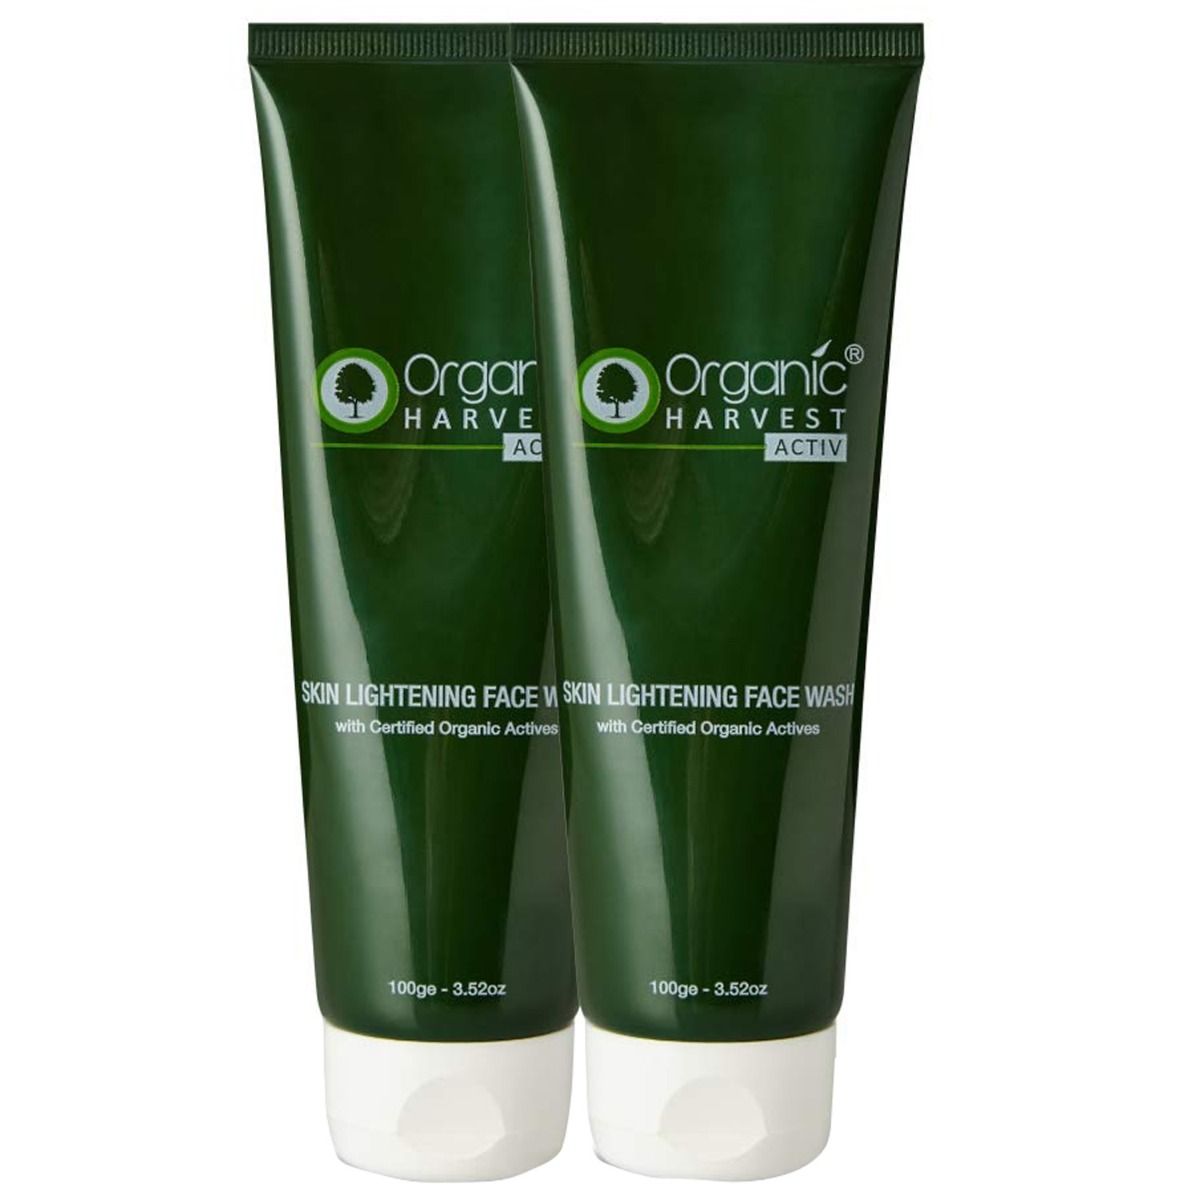 Organic Harvest Activ Skin Lightening Face Wash, 100 gm, Pack of 1 